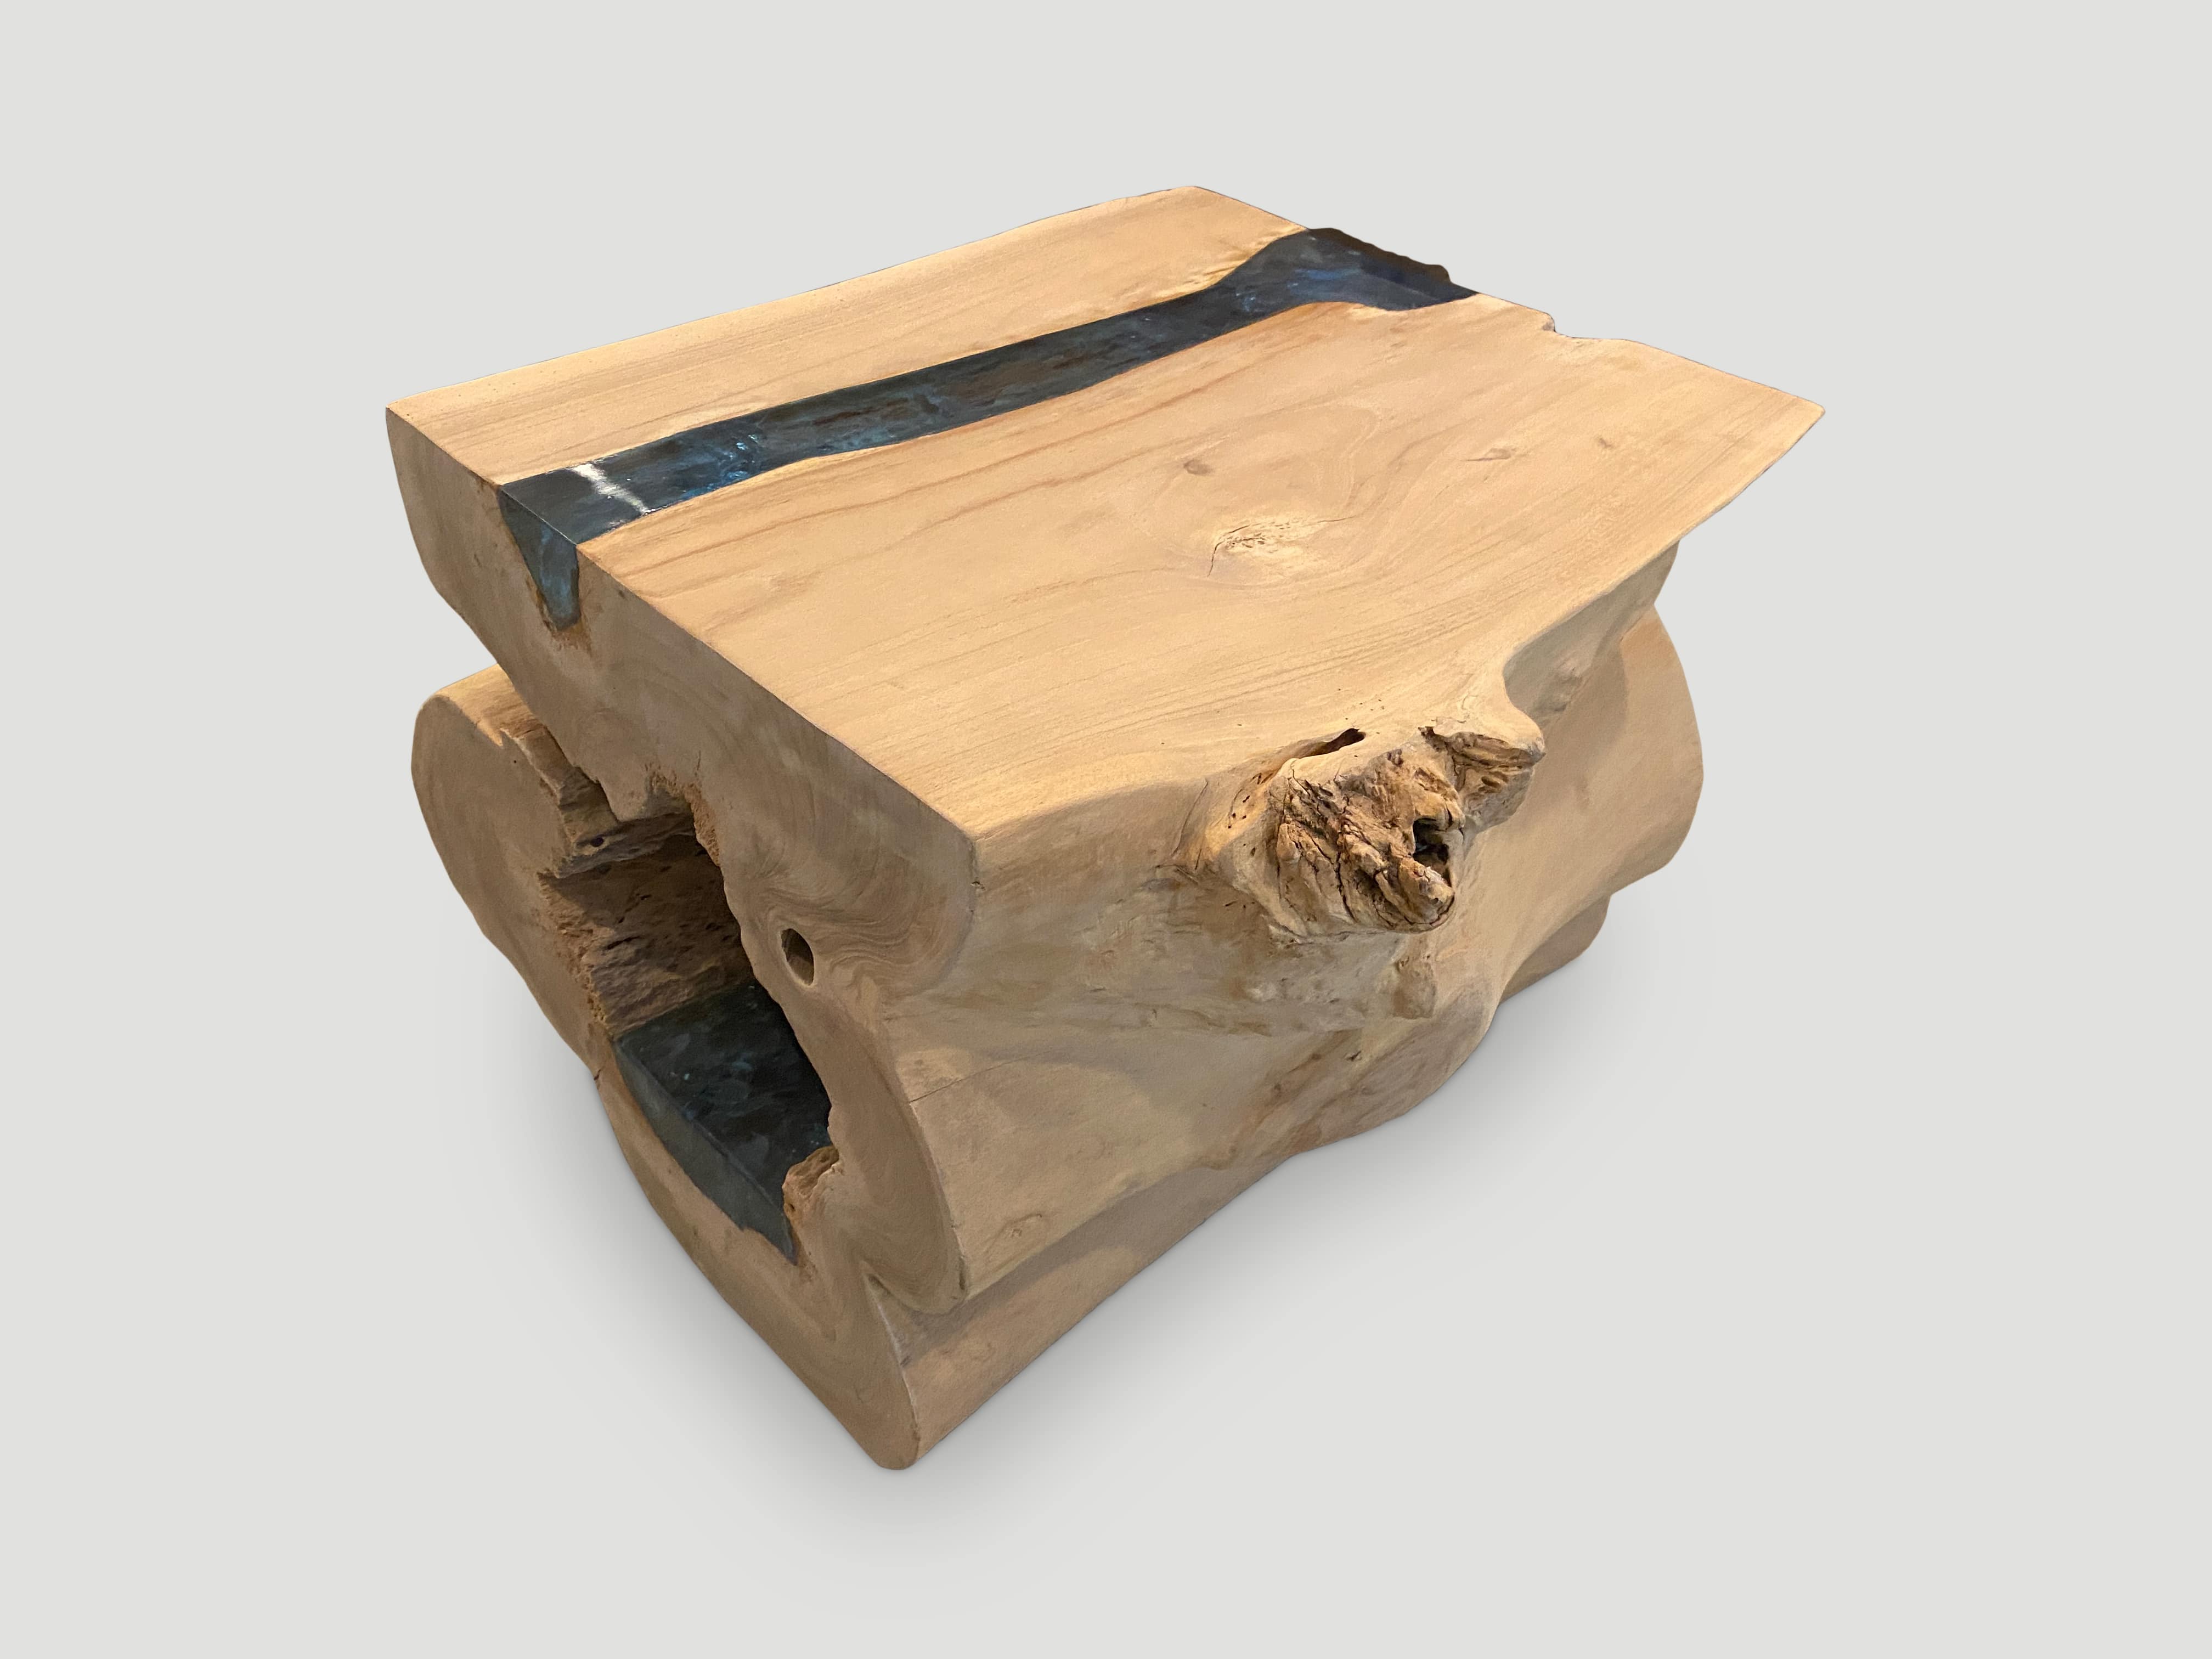 st. barts teak wood coffee table